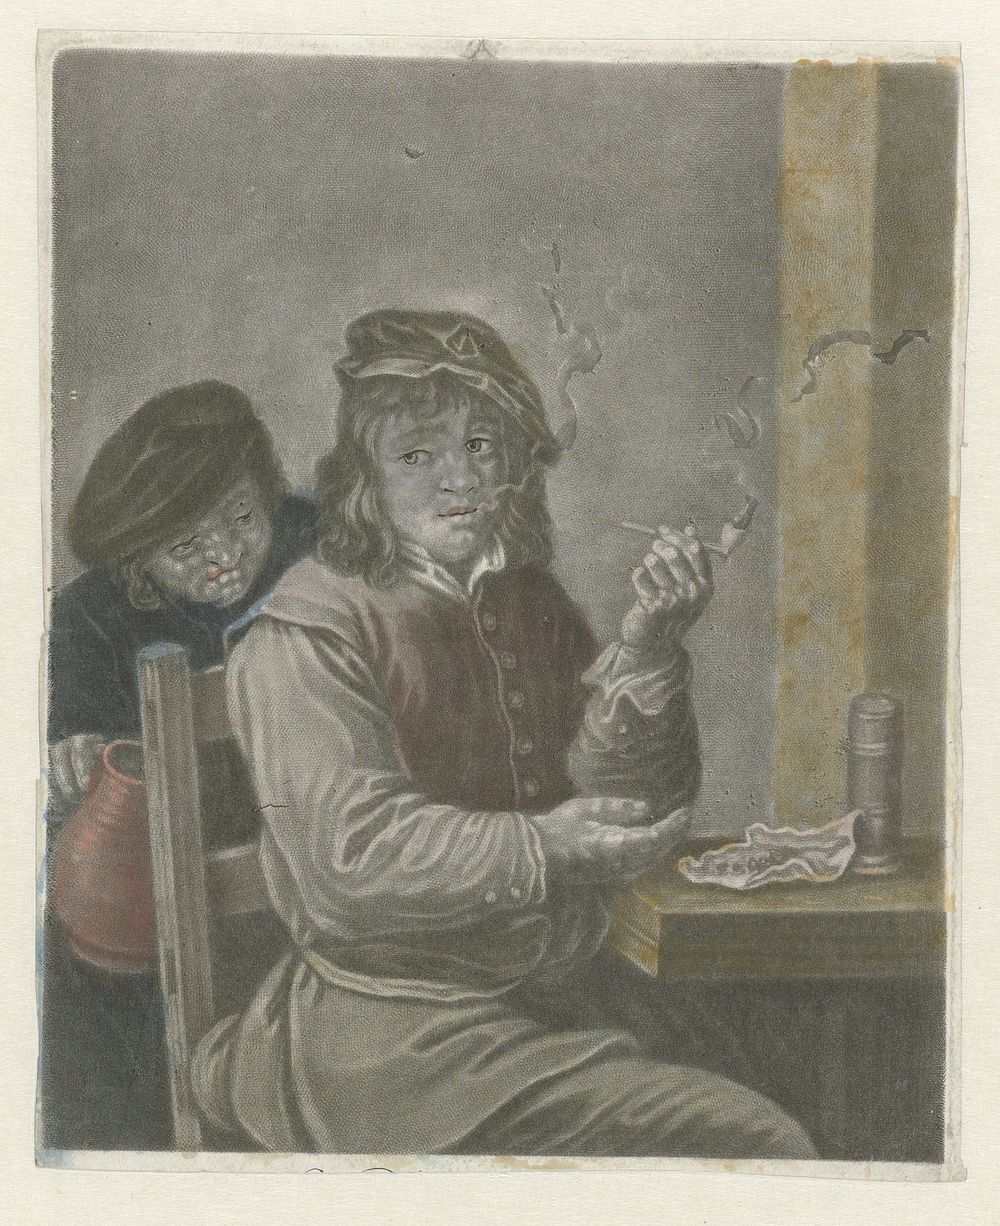 Pijproker, zittend aan een tafel (c. 1650 - c. 1700) by anonymous and David Teniers I